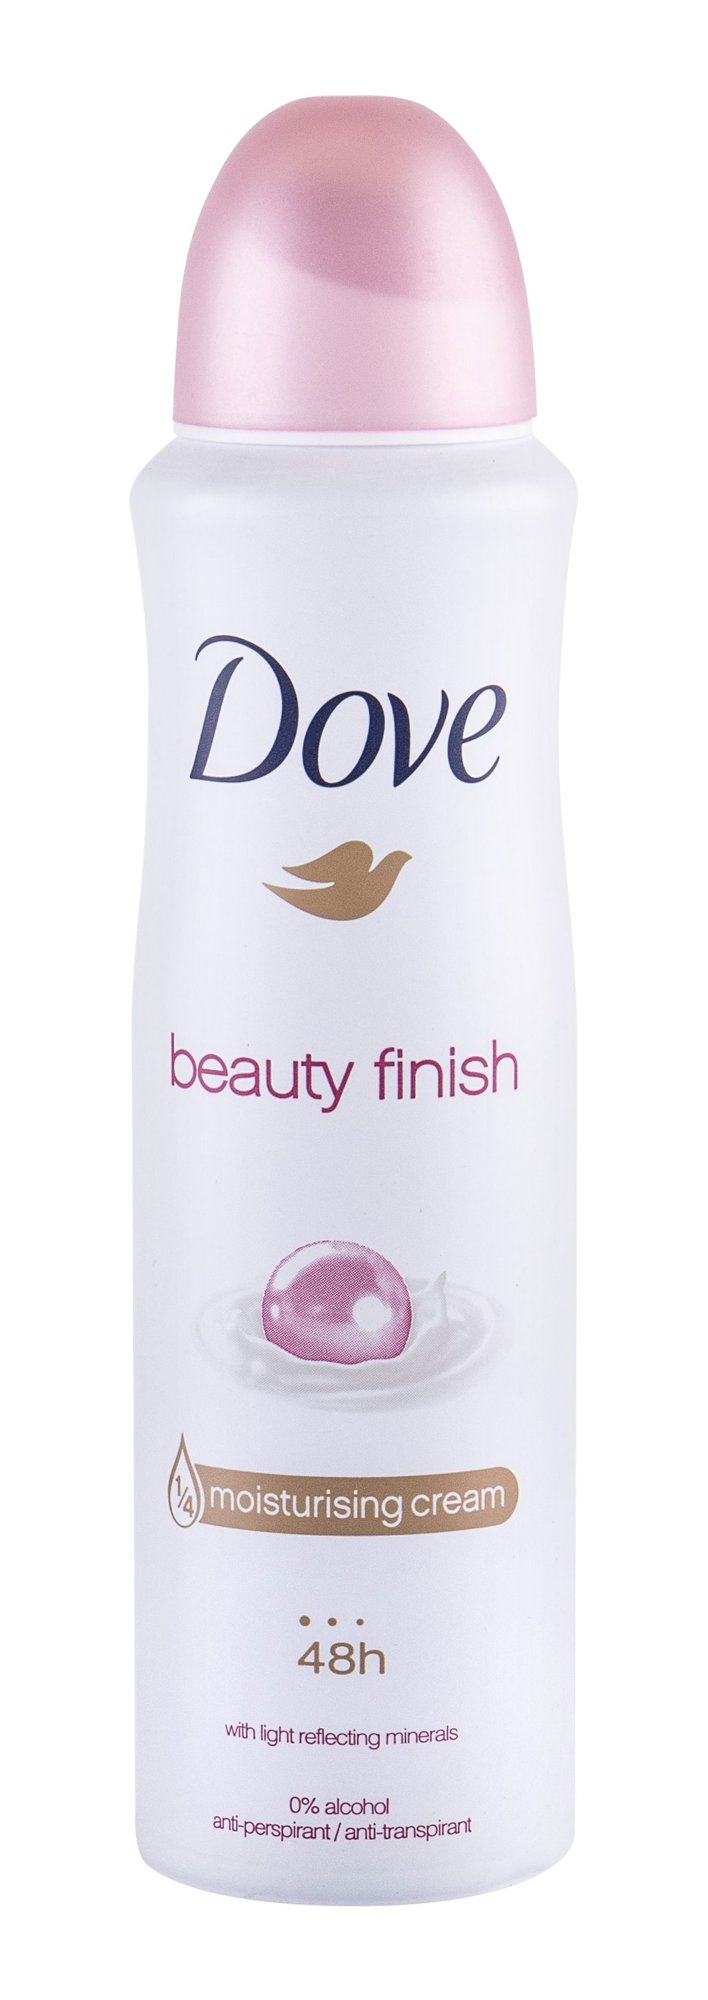 Dove Beauty Finish